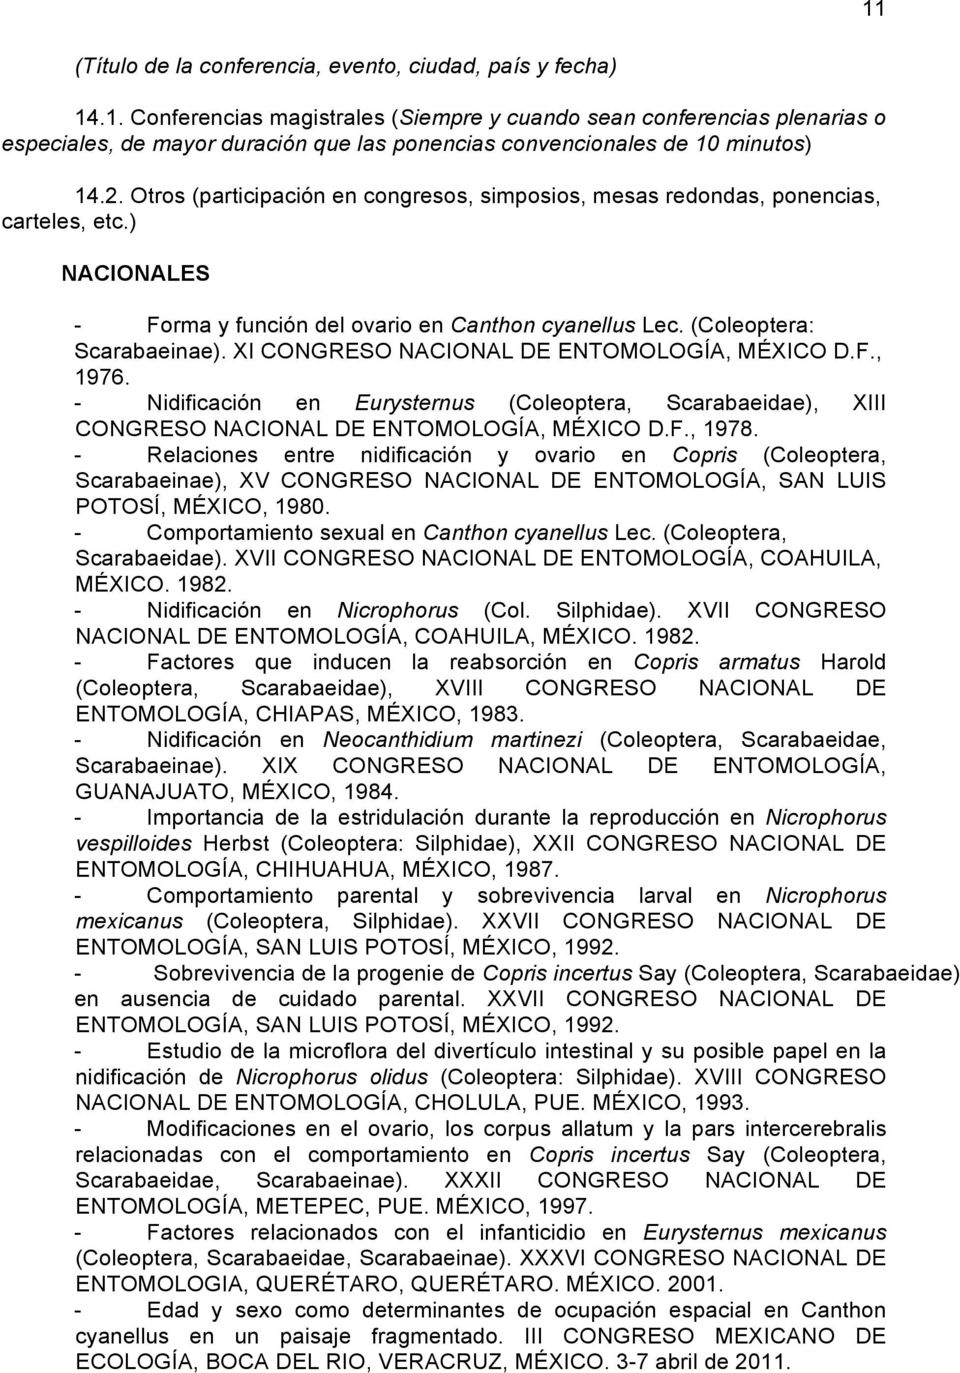 XI CONGRESO NACIONAL DE ENTOMOLOGÍA, MÉXICO D.F., 1976. - Nidificación en Eurysternus (Coleoptera, Scarabaeidae), XIII CONGRESO NACIONAL DE ENTOMOLOGÍA, MÉXICO D.F., 1978.